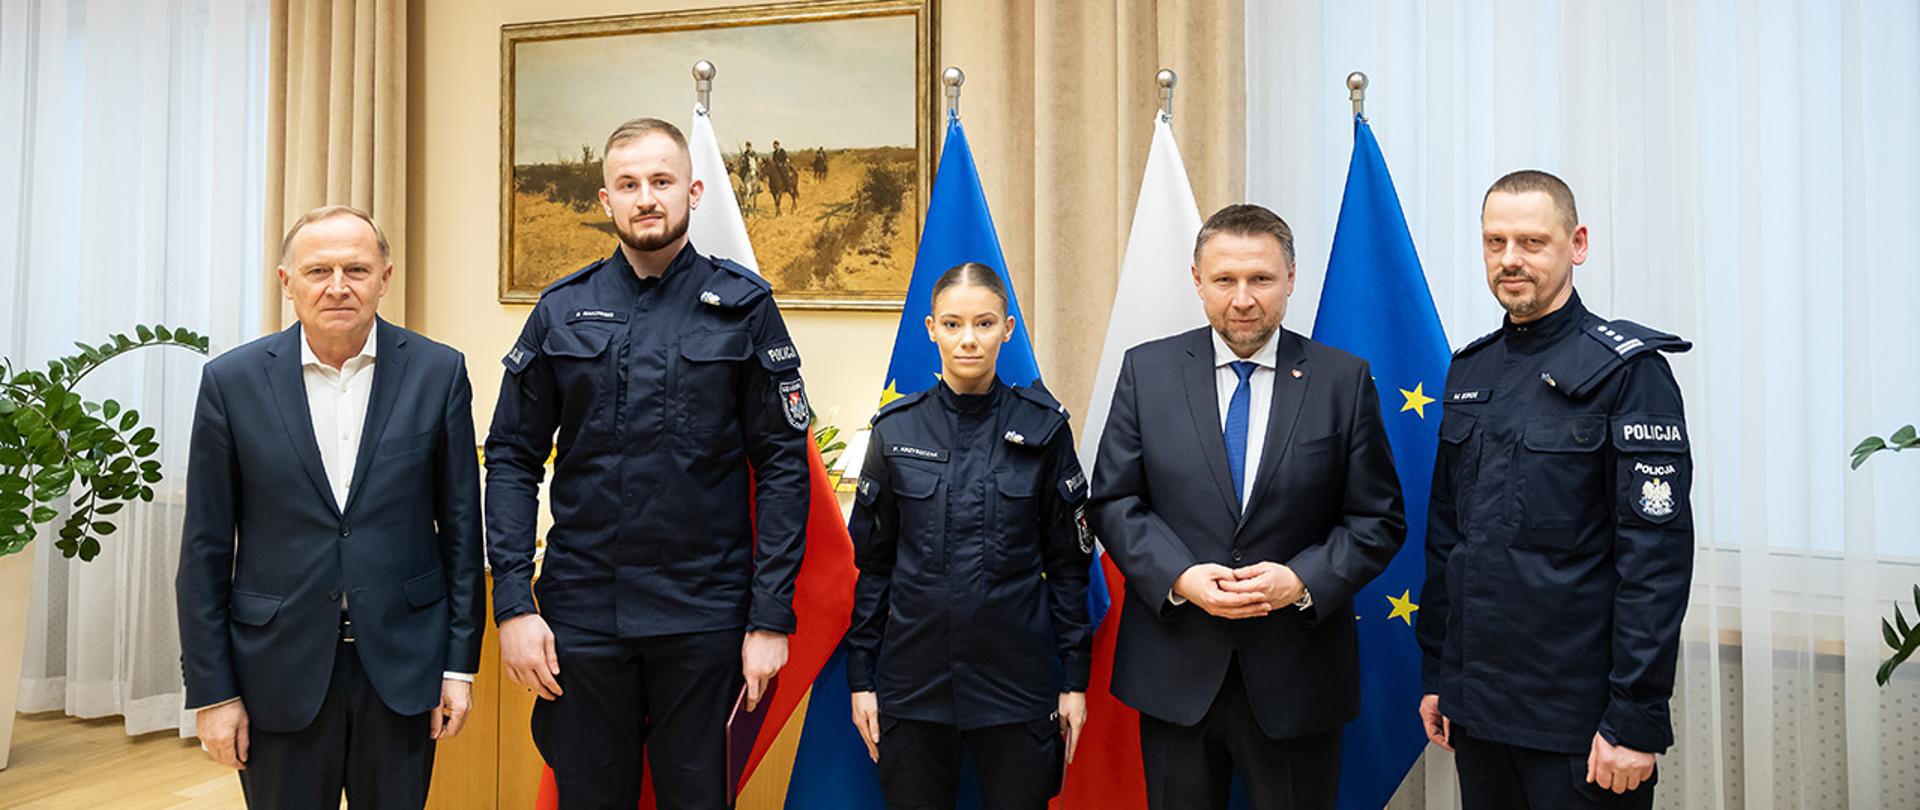 Na zdjęciu minister Marcin Kierwiński, wiceminister Czesław Mroczek oraz komendandt główny Policji inspektor Marek Boroń w towarzystwie wyróżnionych policjantów.